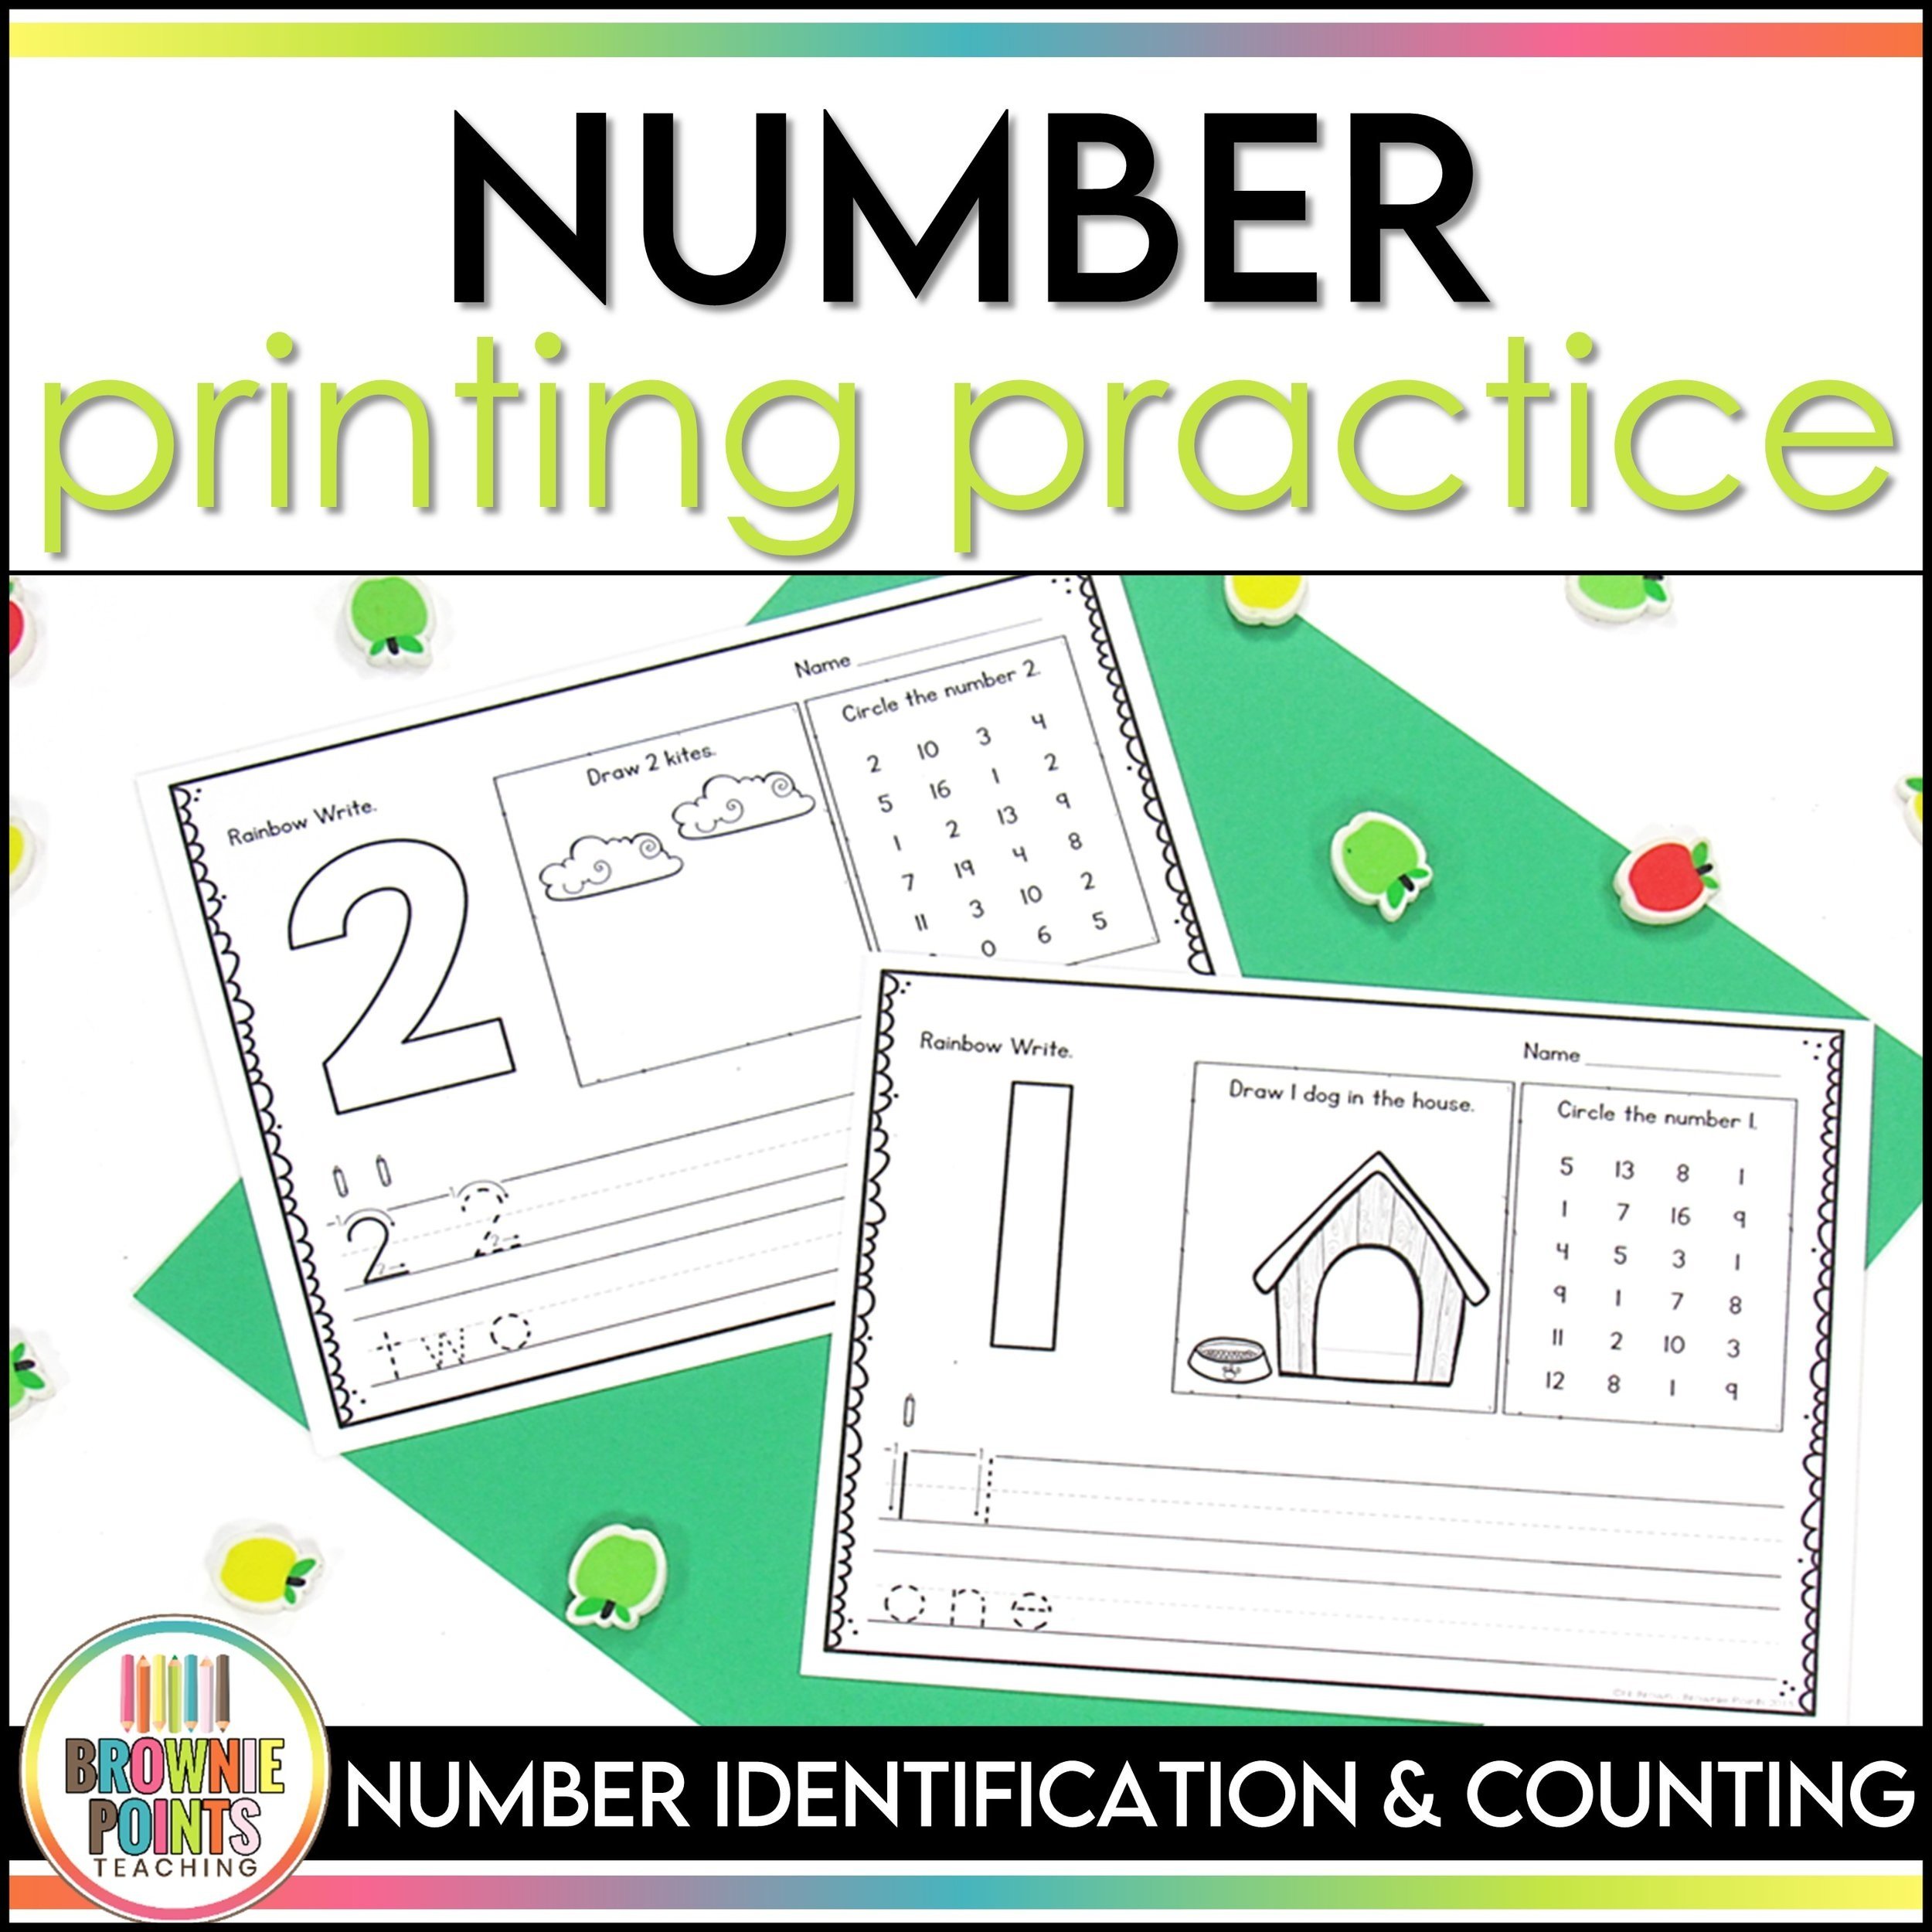 Number+Printing+Practice+%281%29.jpg